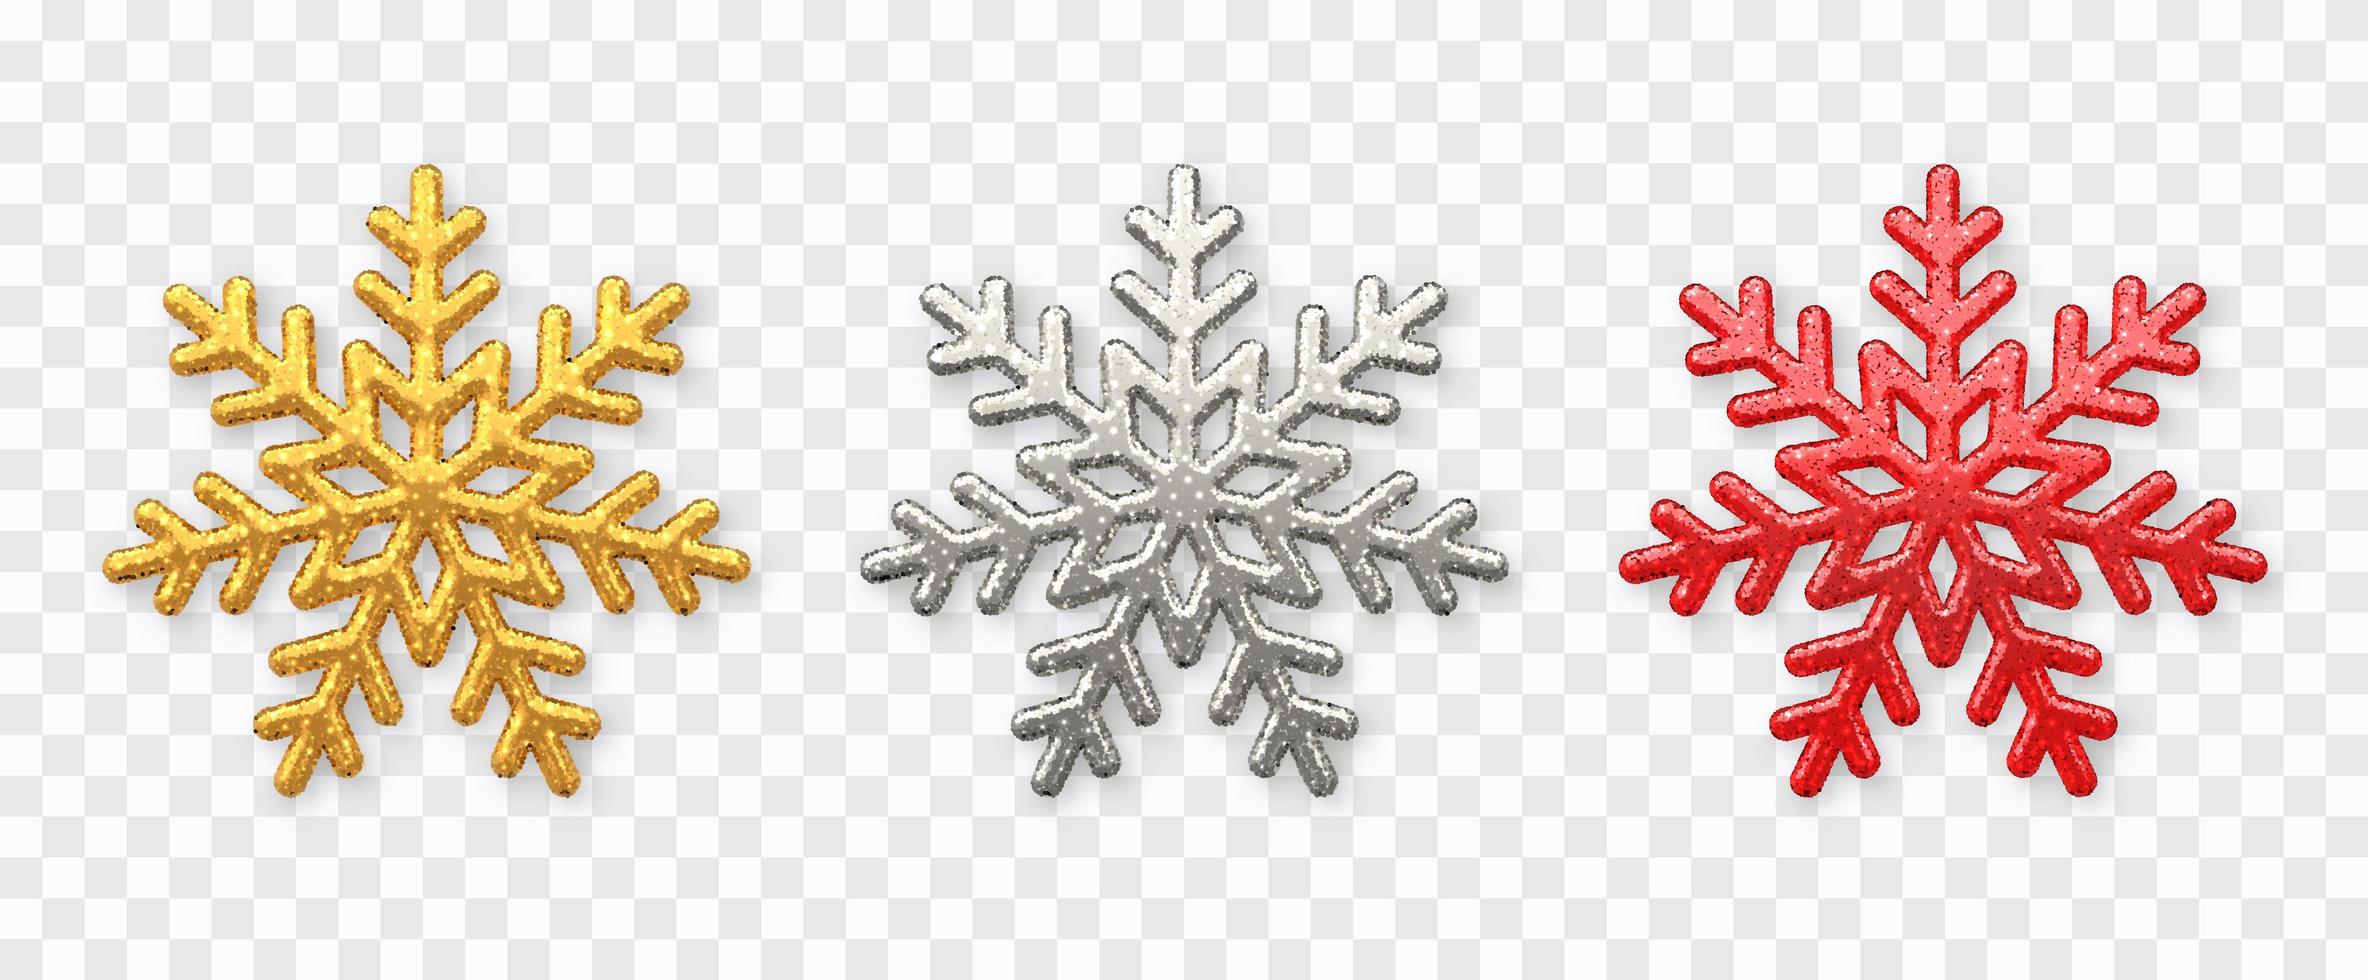 sneeuwvlokken instellen. sprankelende gouden, zilveren en rode sneeuwvlokken met glitter textuur geïsoleerd op de achtergrond. kerst decoratie. vector